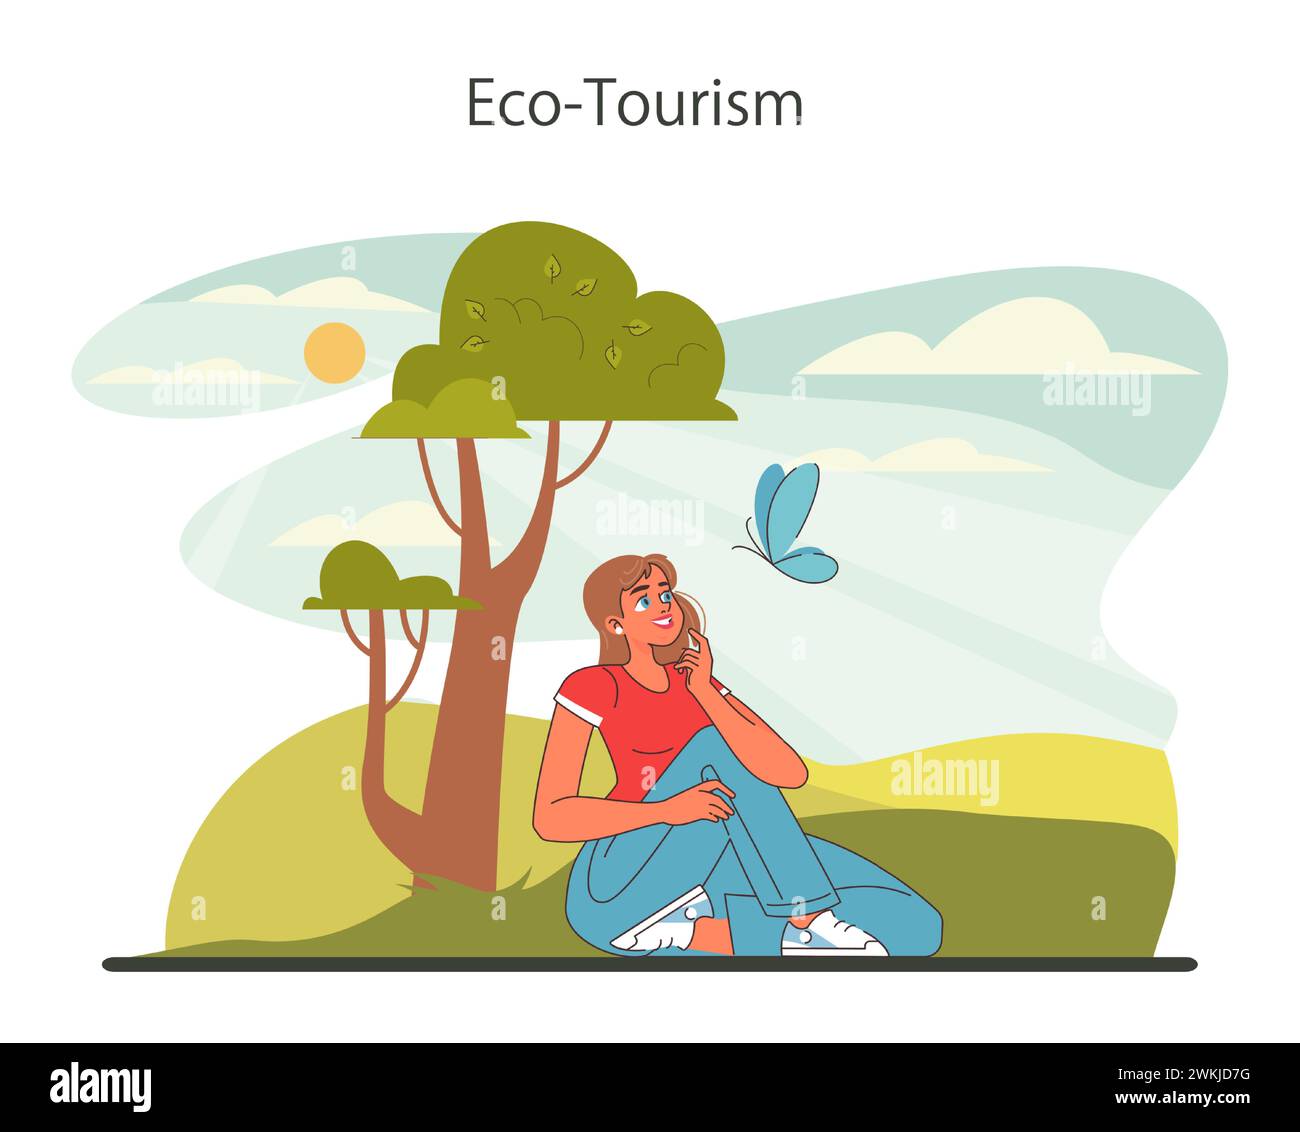 Nachhaltiger Tourismus. Ökotourismus, umweltfreundliche Erholung. Verantwortungsbewusstes, umweltfreundliches Reisen in der lokalen Gemeinschaft. Illustration des flachen Vektors Stock Vektor